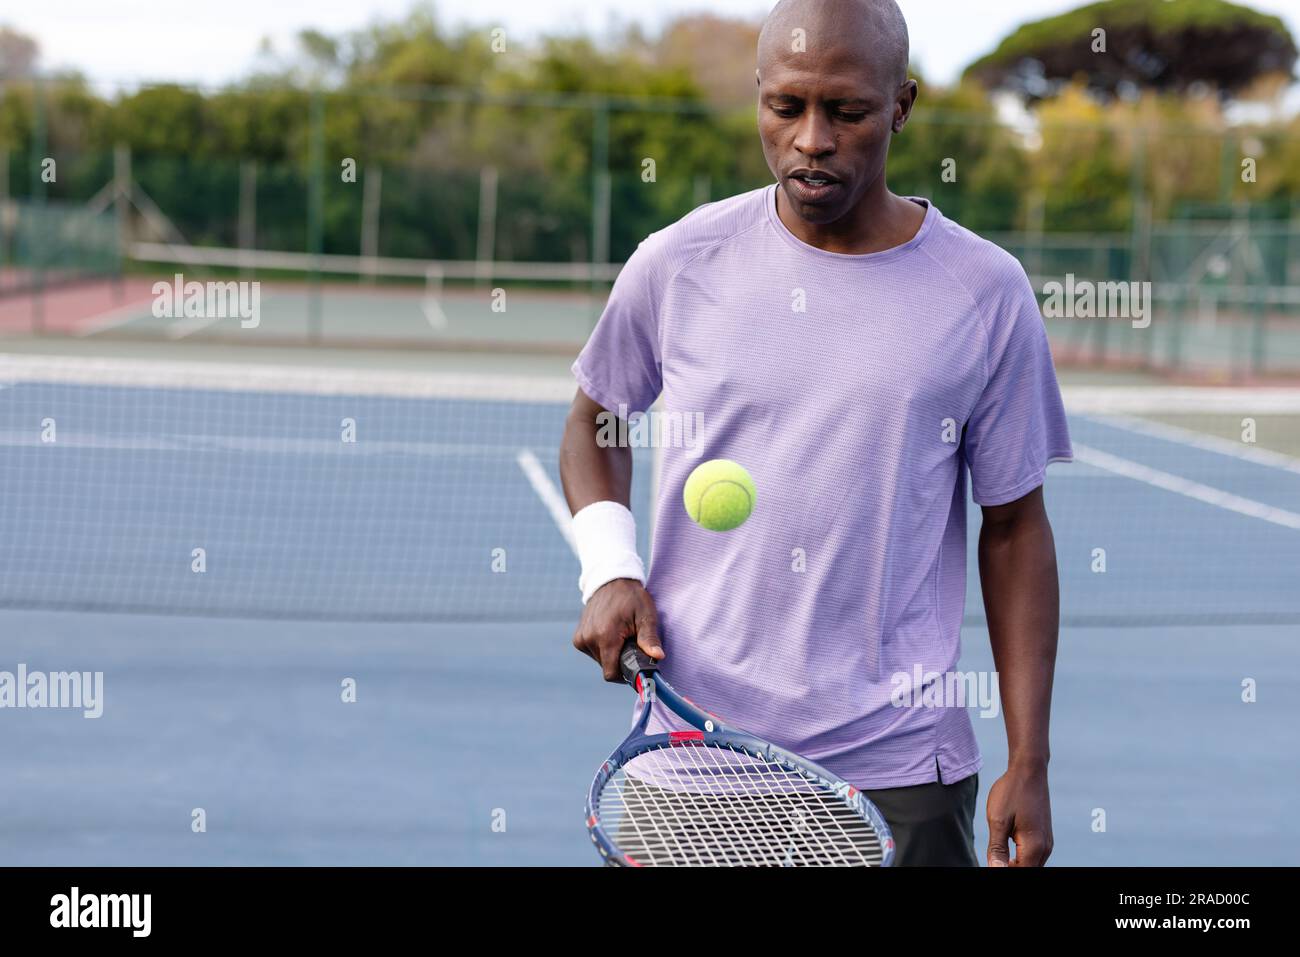 Joueur de tennis masculin afro-américain concentré rebondissant balle sur raquette sur un court extérieur Banque D'Images